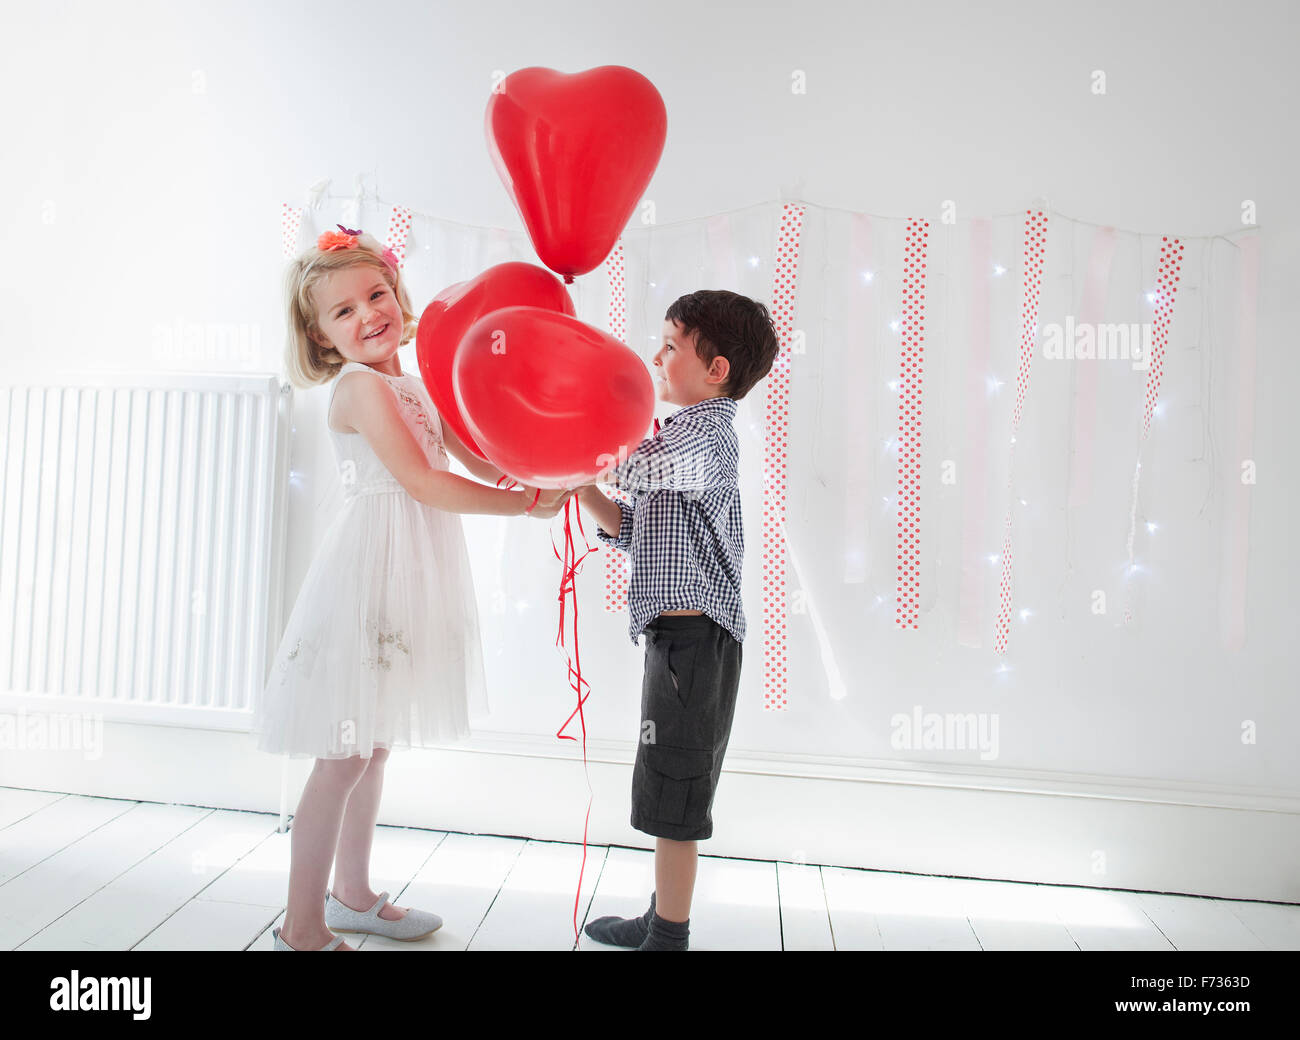 Chico y chica posando para una foto en un estudio del fotógrafo, sosteniendo los globos rojos. Foto de stock